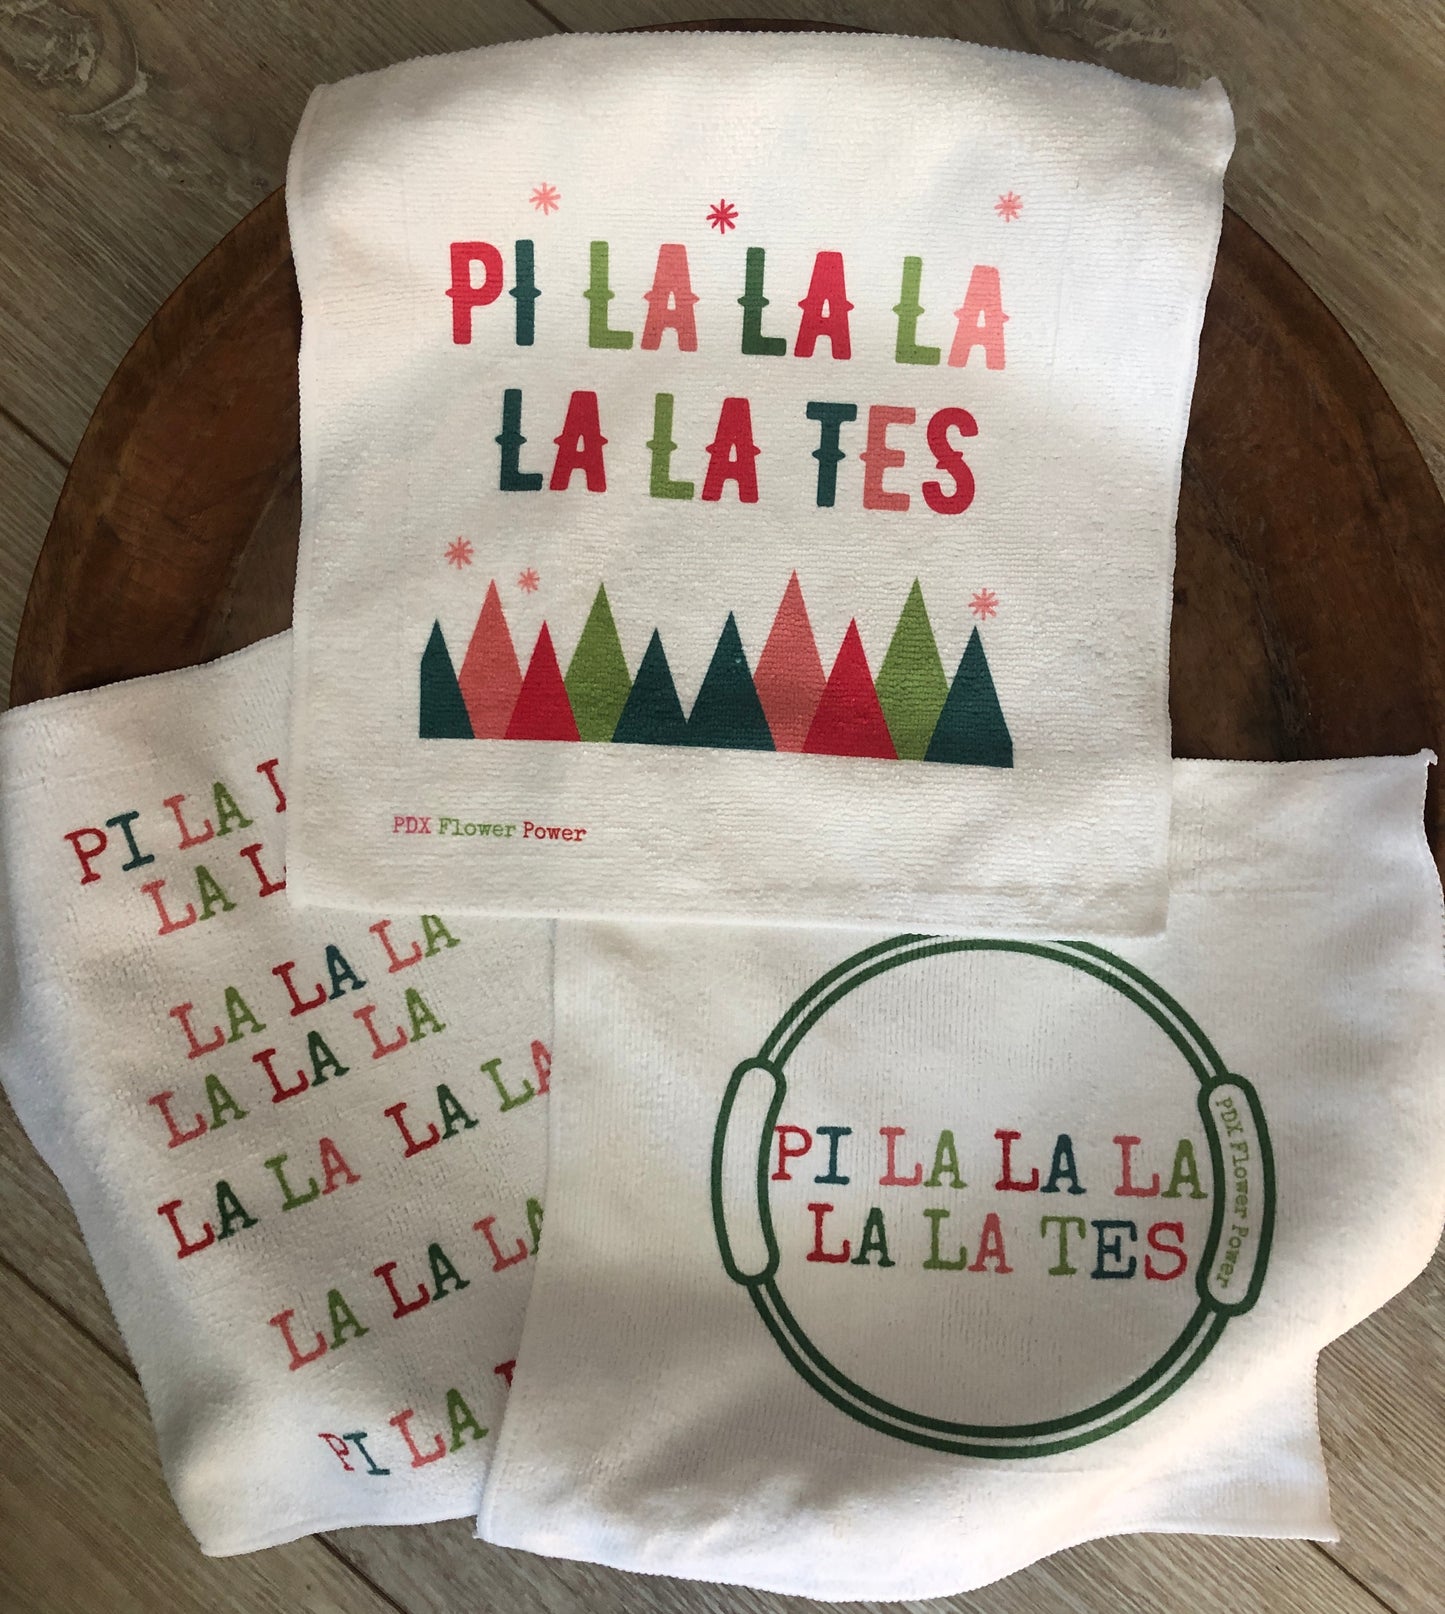 "Pil la la la la lates Holiday towel set" Pilates towel set of 3.  12" x 12 " microfiber towels